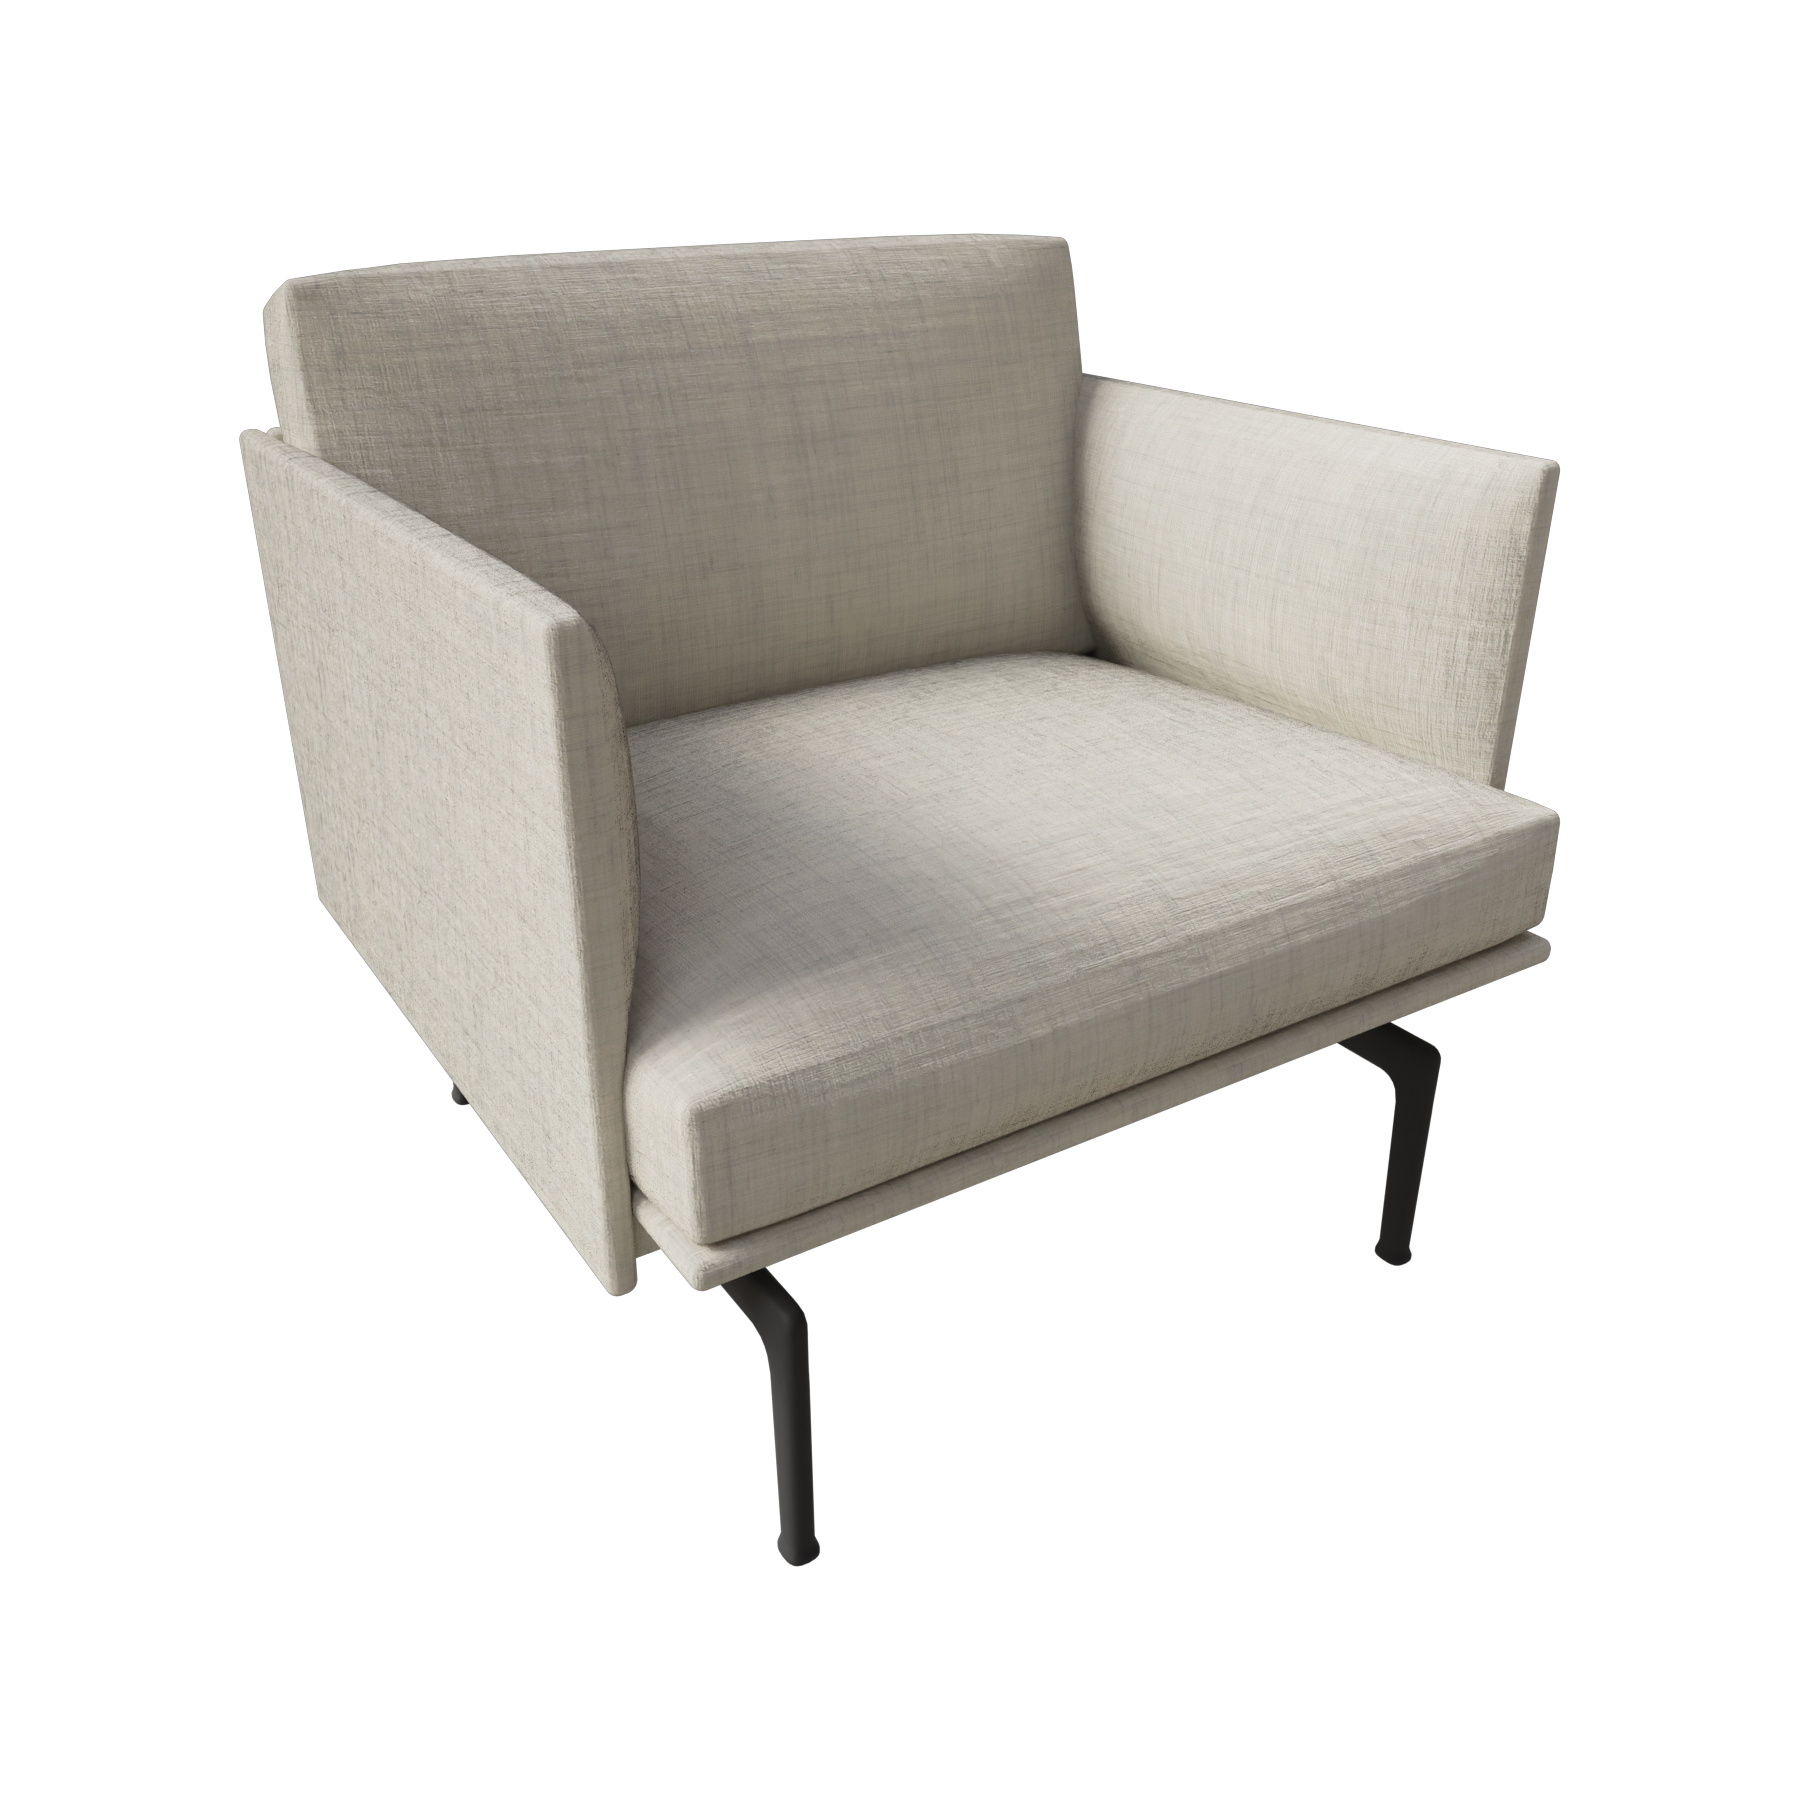 Outline Studio Chair / SHöhe 45 cm 73118-113